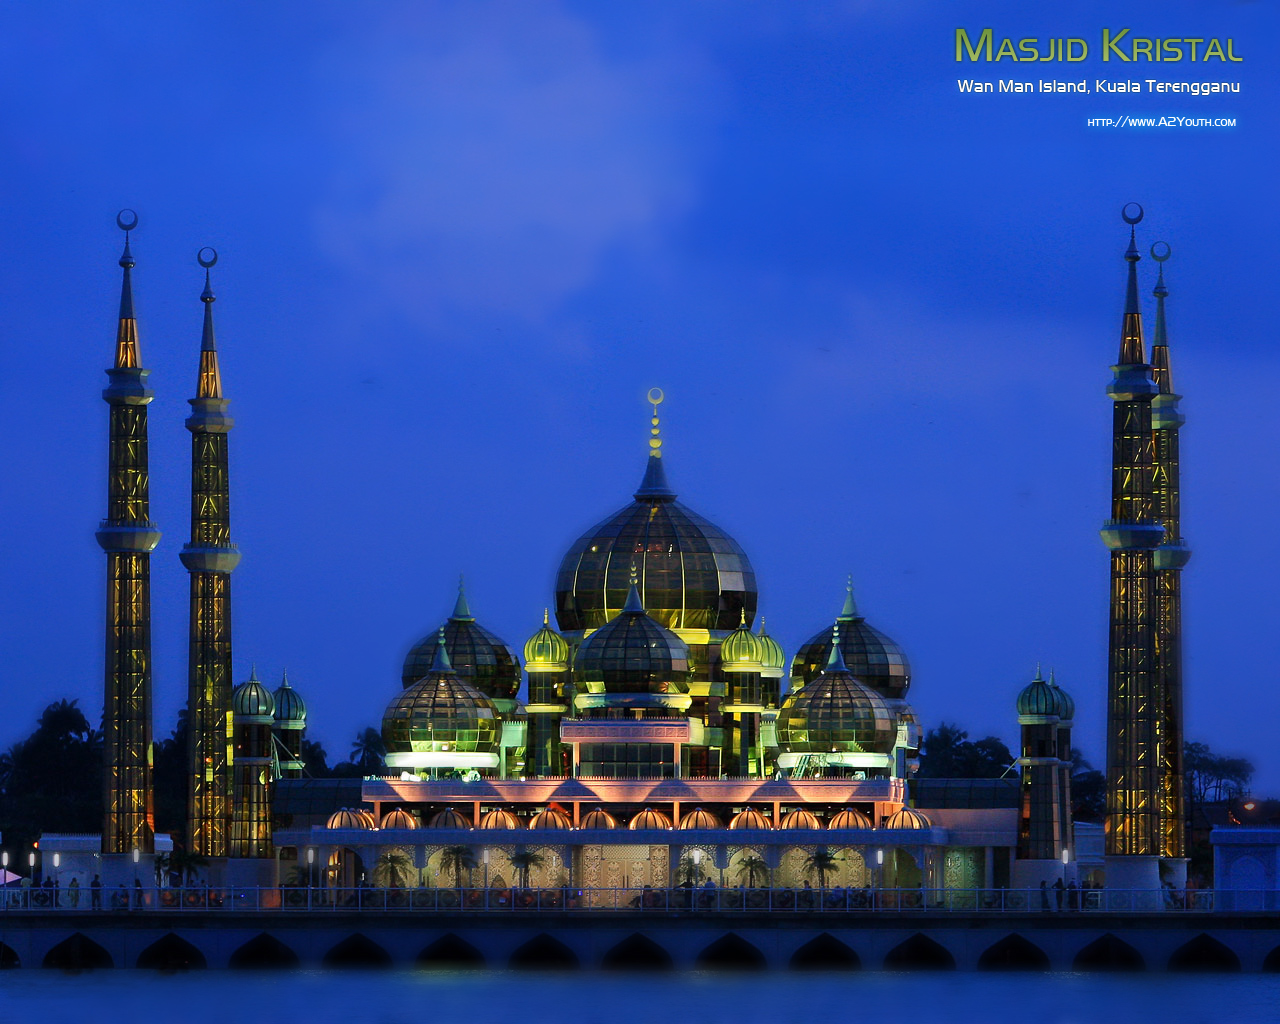 Masjid Kristal  Masjids  Islamic Wallpapers  A2Youth.com